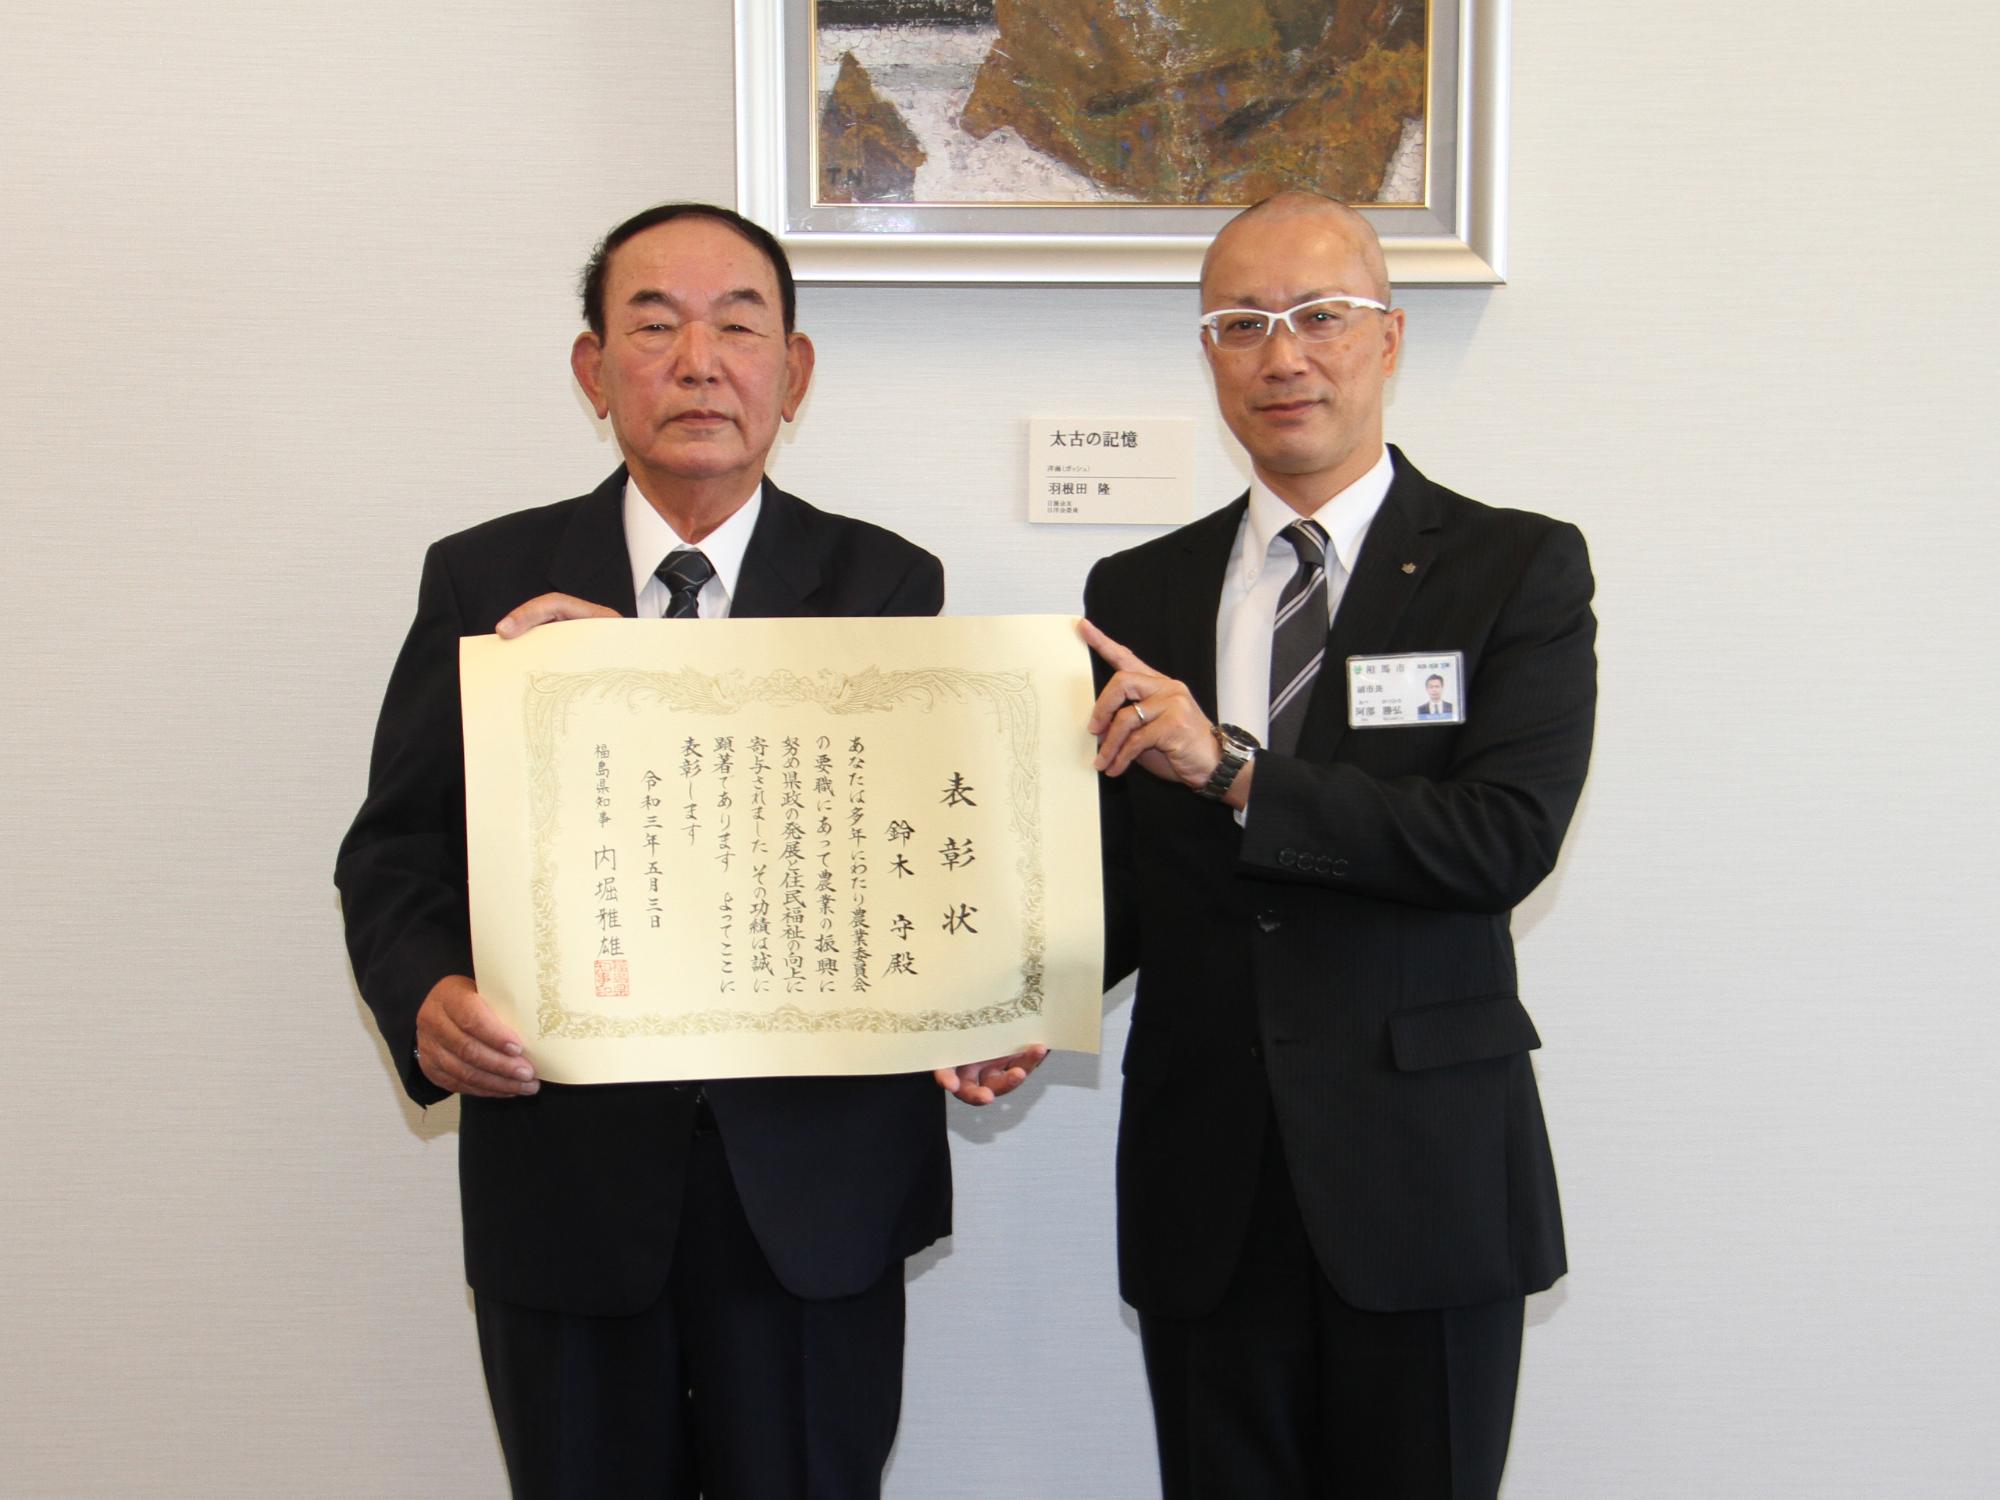 鈴木さんが農業功労者知事表彰の報告を阿部副市長にする様子